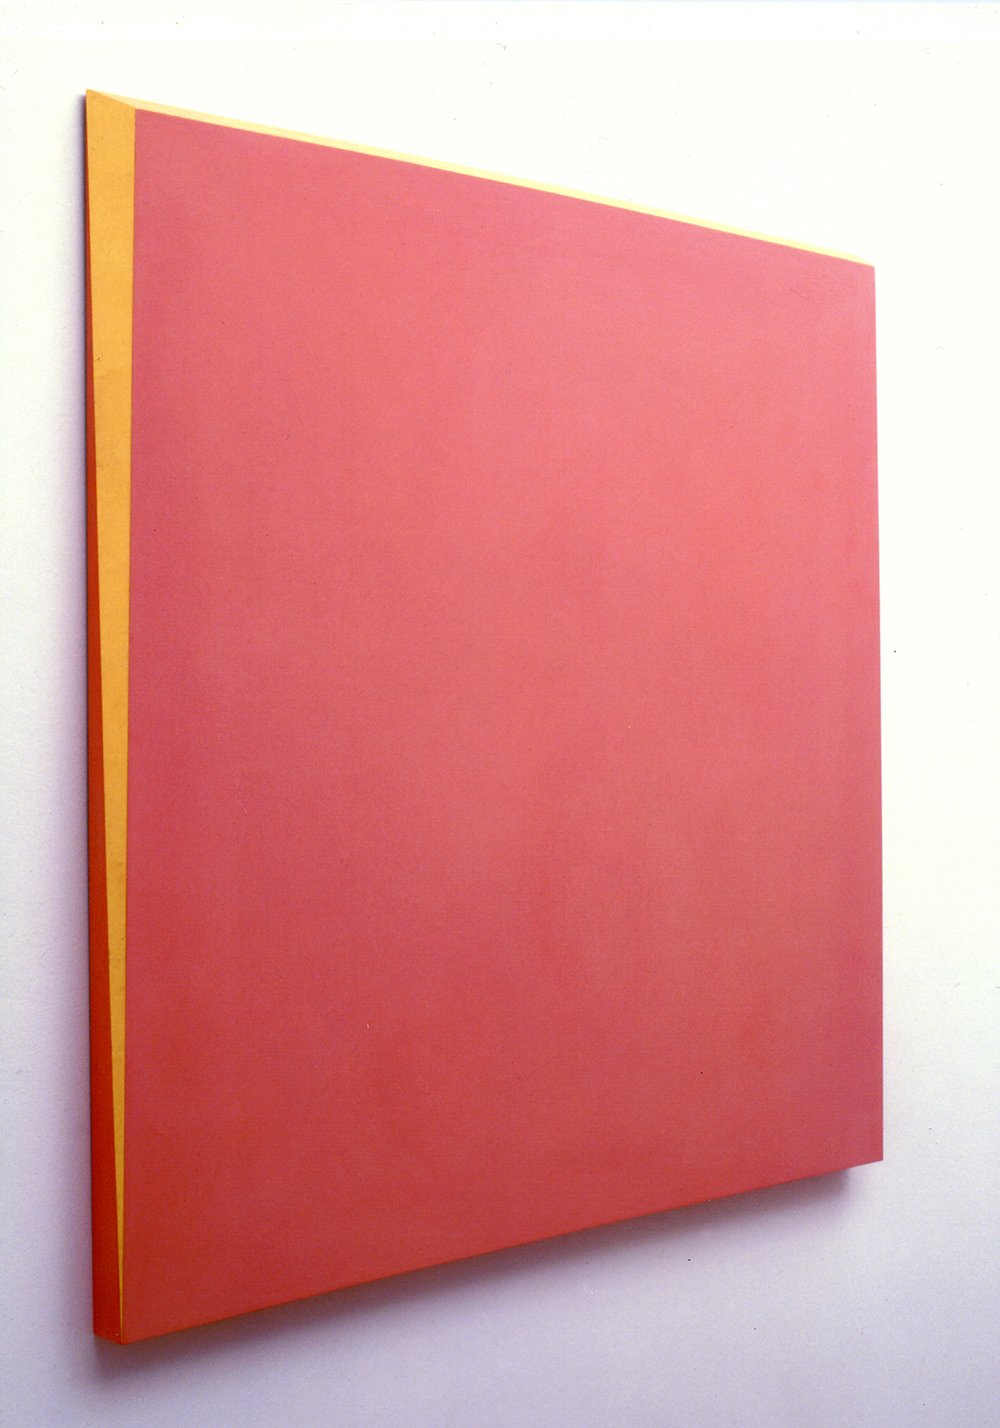 5. Ettore Spalletti, Rosso Porpora, Oro, 2004, color on board, gold leaf, 100 x 100 cm.jpg